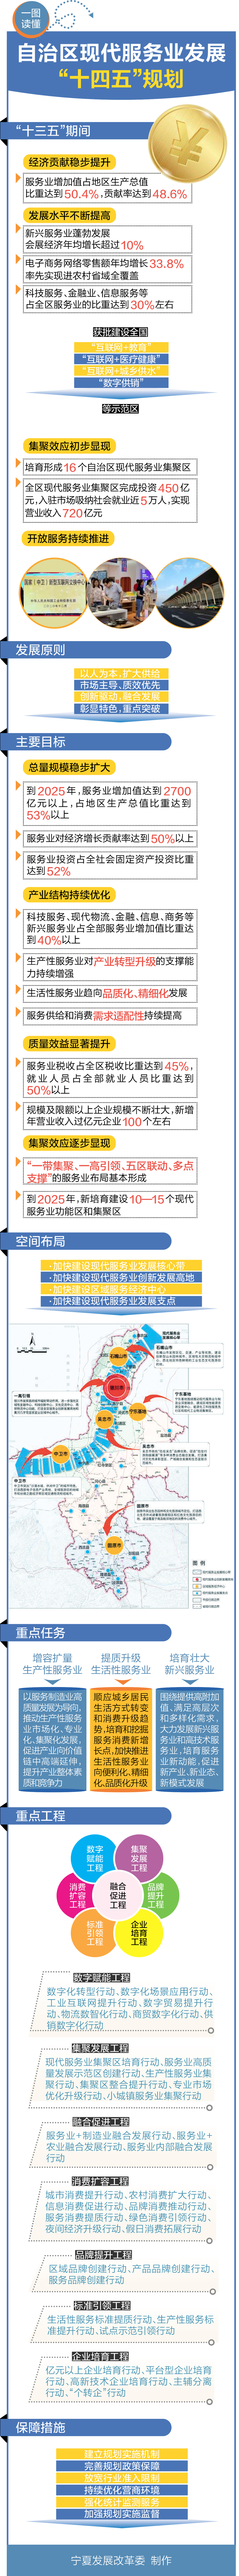 《宁夏回族自治区现代服务业发展“十四五”规划》图解(图1)